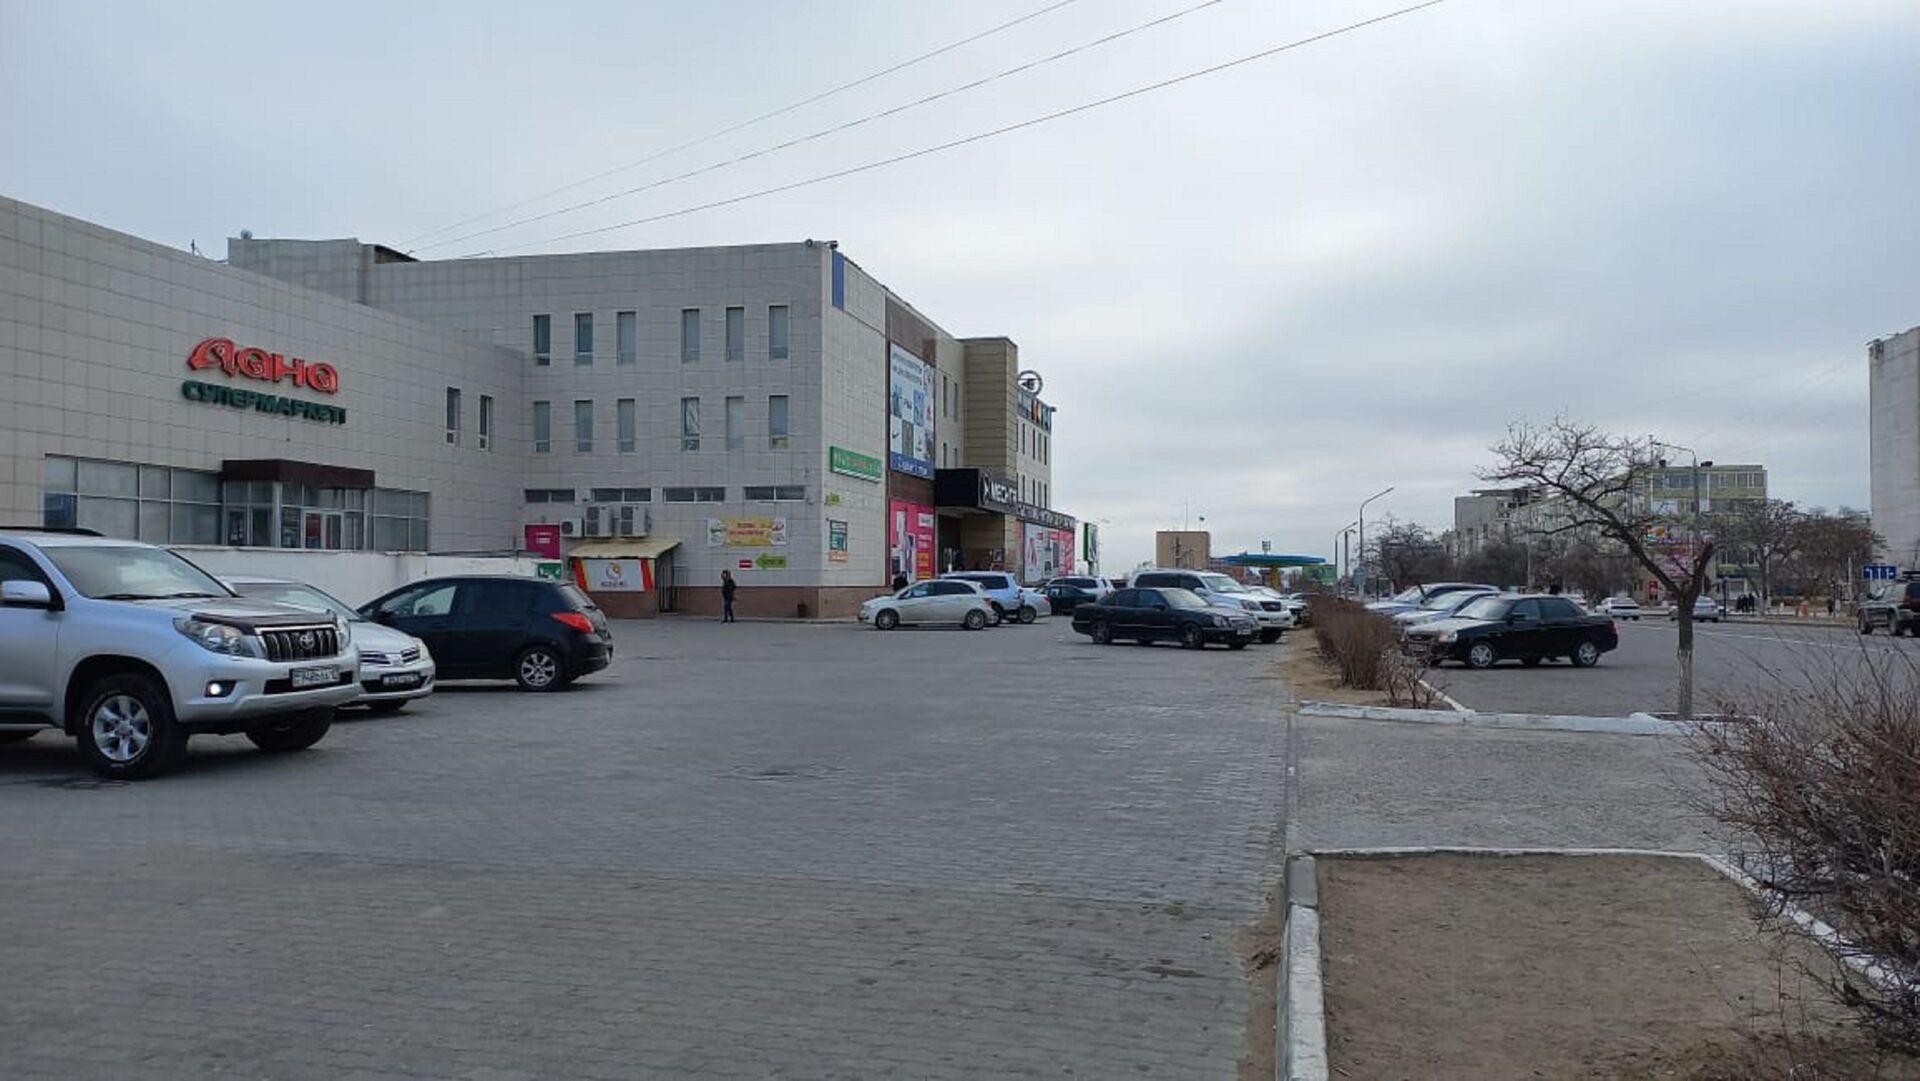 Торговый дом Мечта в Актау открыт для посетителей - Sputnik Казахстан, 1920, 01.02.2022